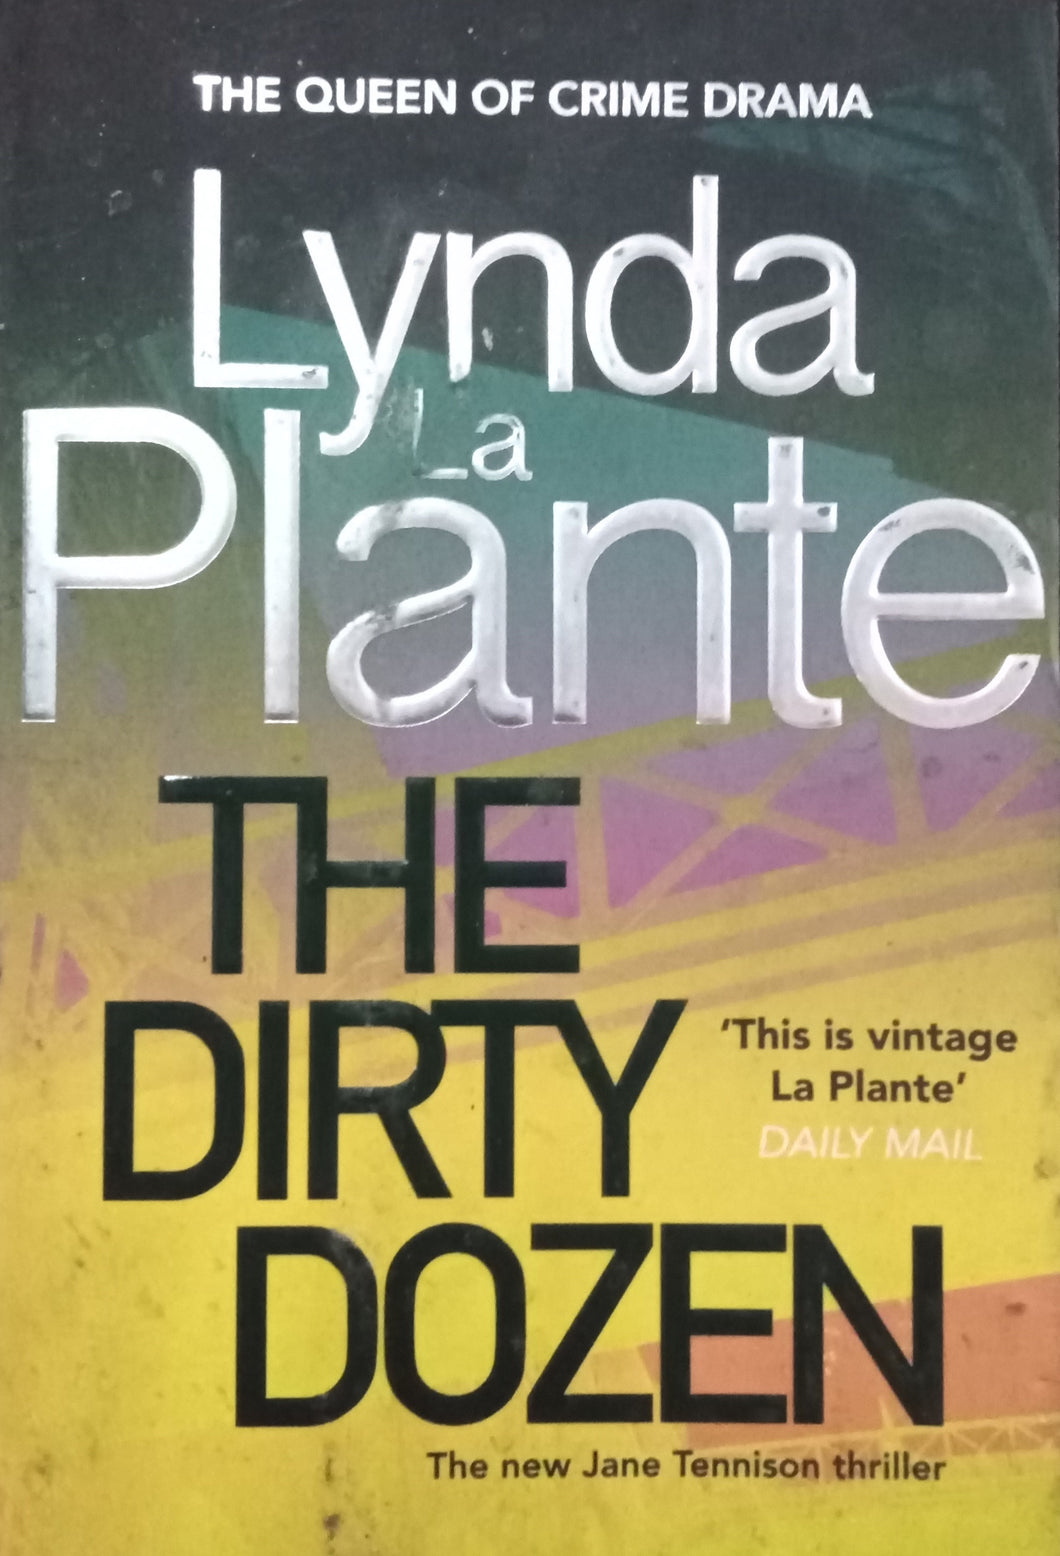 The Dirty Dozen by Lynda La Plante